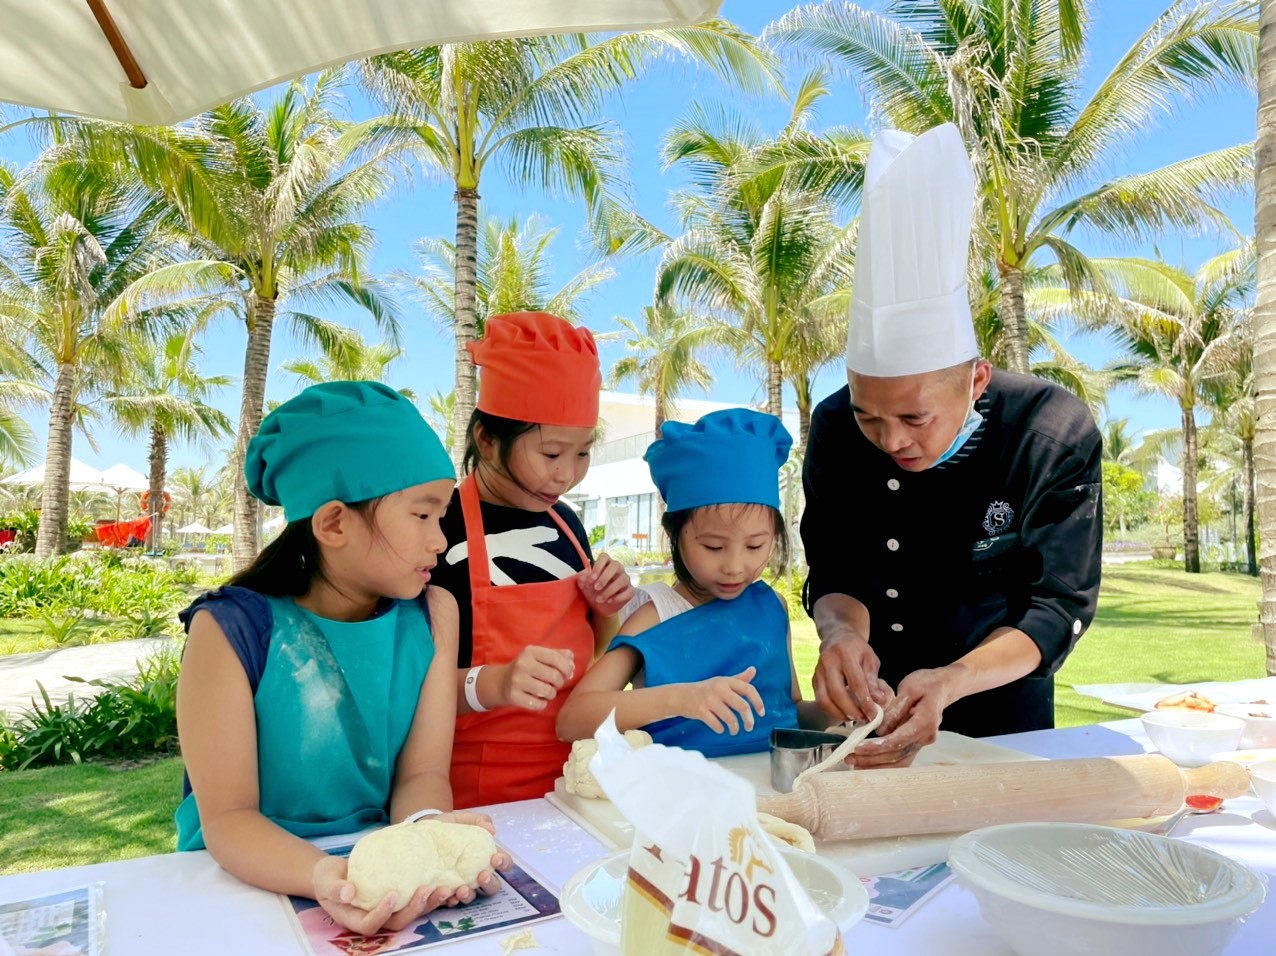 Đầu bếp một resort ở Bãi Dài, Cam Lâm hướng dẫn các em nhỏ làm bánh. (Ảnh minh họa, chụp trước khi dịch Covid-19 bùng phát đợt 4)